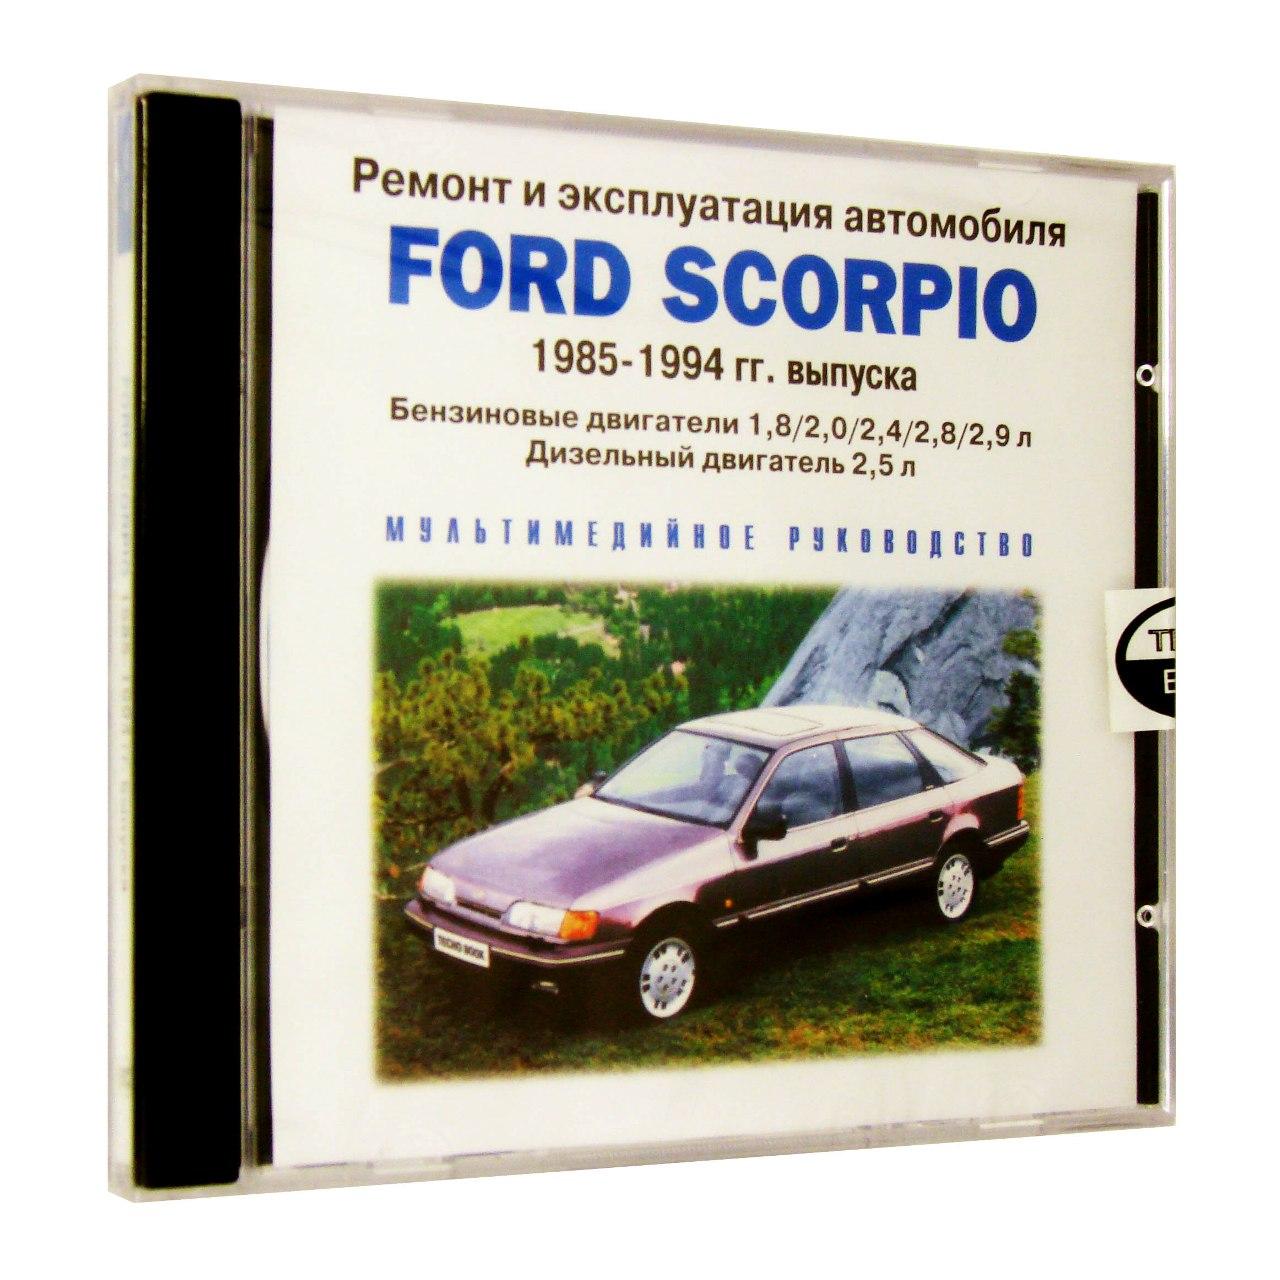 Компьютерный компакт-диск Ford Scorpio 1985-1994 г.:ремонт и эксплуатация автомобиля (ПК), фирма "RMG Multimedia", 1CD